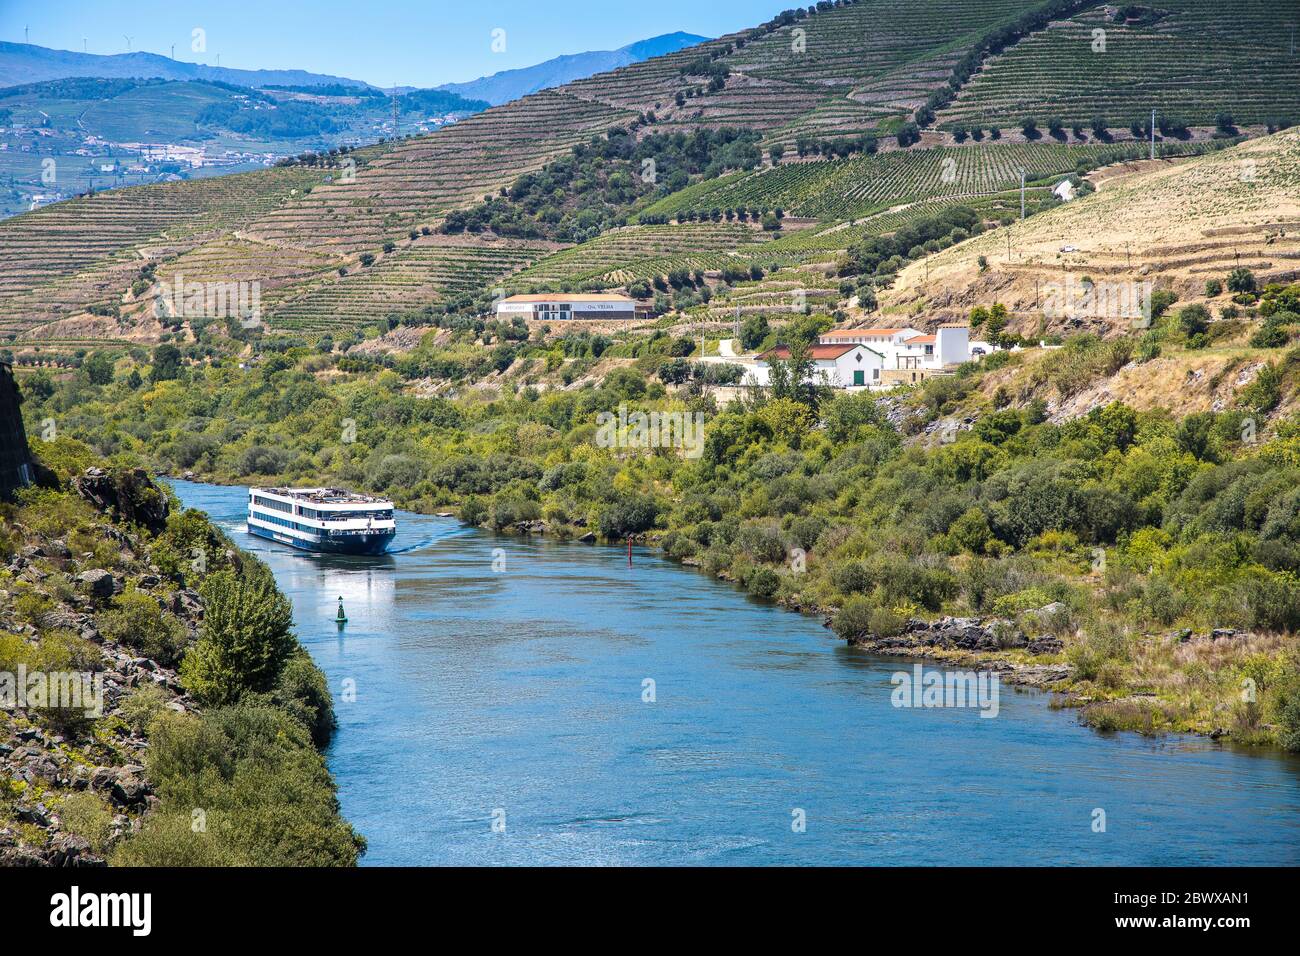 Crucero por el río en el valle rodeado de viñedos en terrazas a lo largo del río Duero Portugal Foto de stock